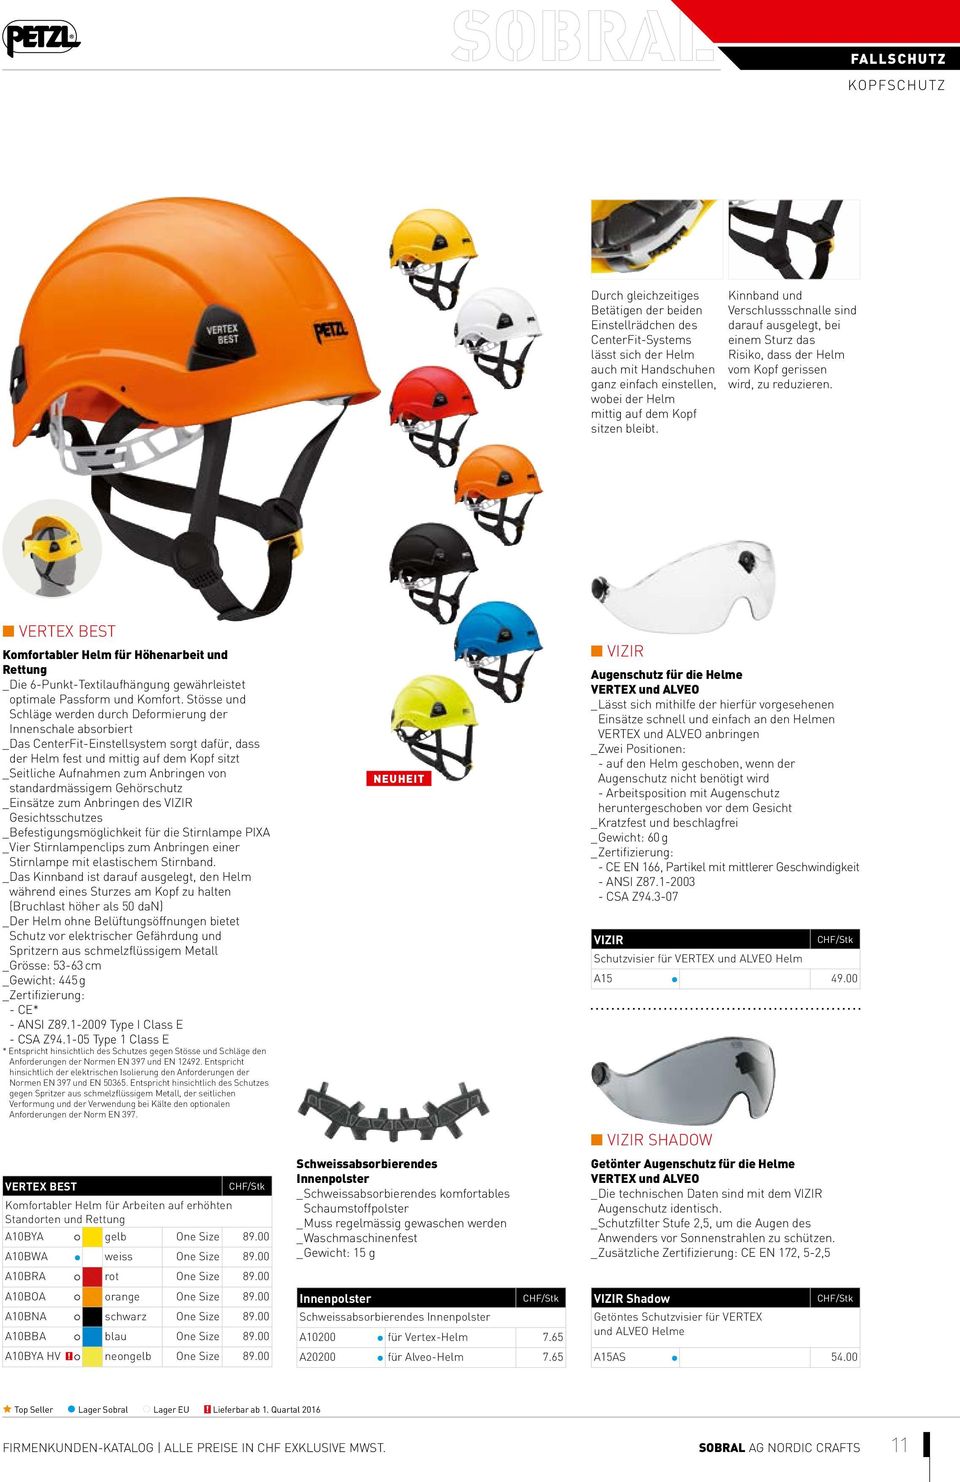 VERTEX BEST Komfortabler Helm für Höhenarbeit und Rettung _ Die 6-Punkt-Textilaufhängung gewährleistet optimale Passform und Komfort.